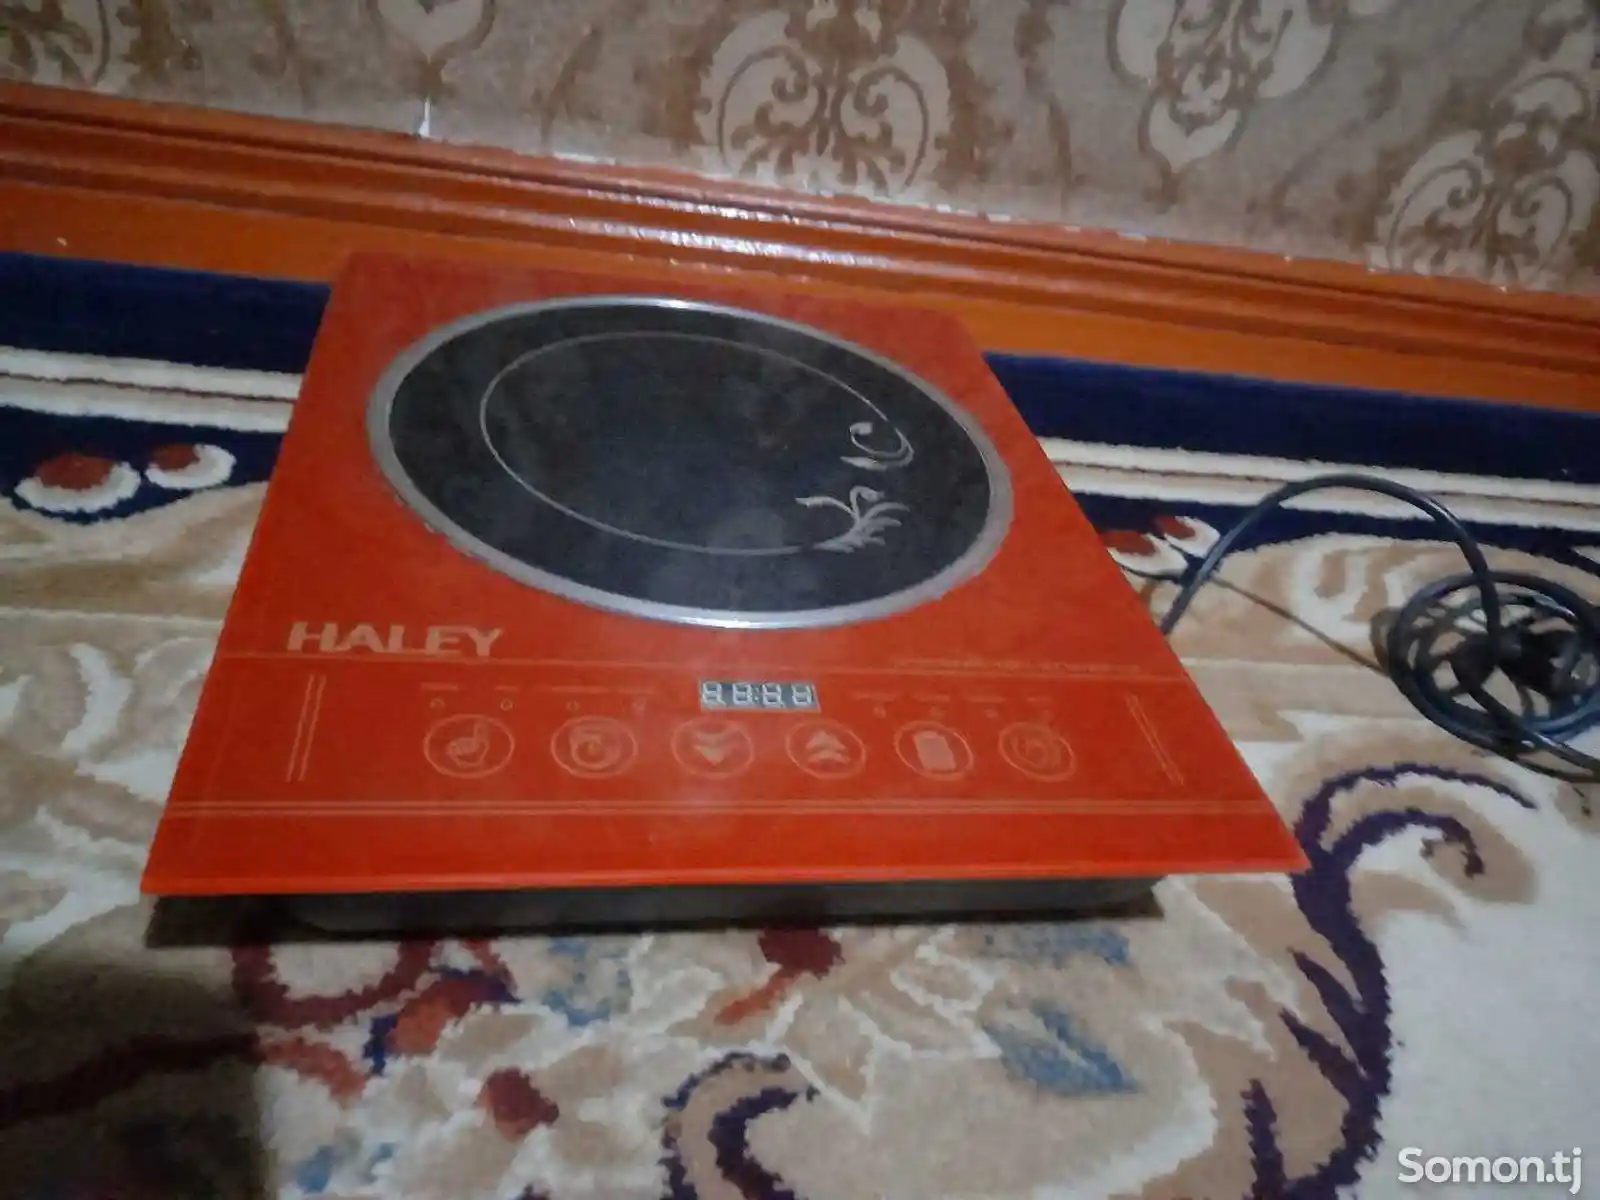 Сенсорная электроплита HALEY-1